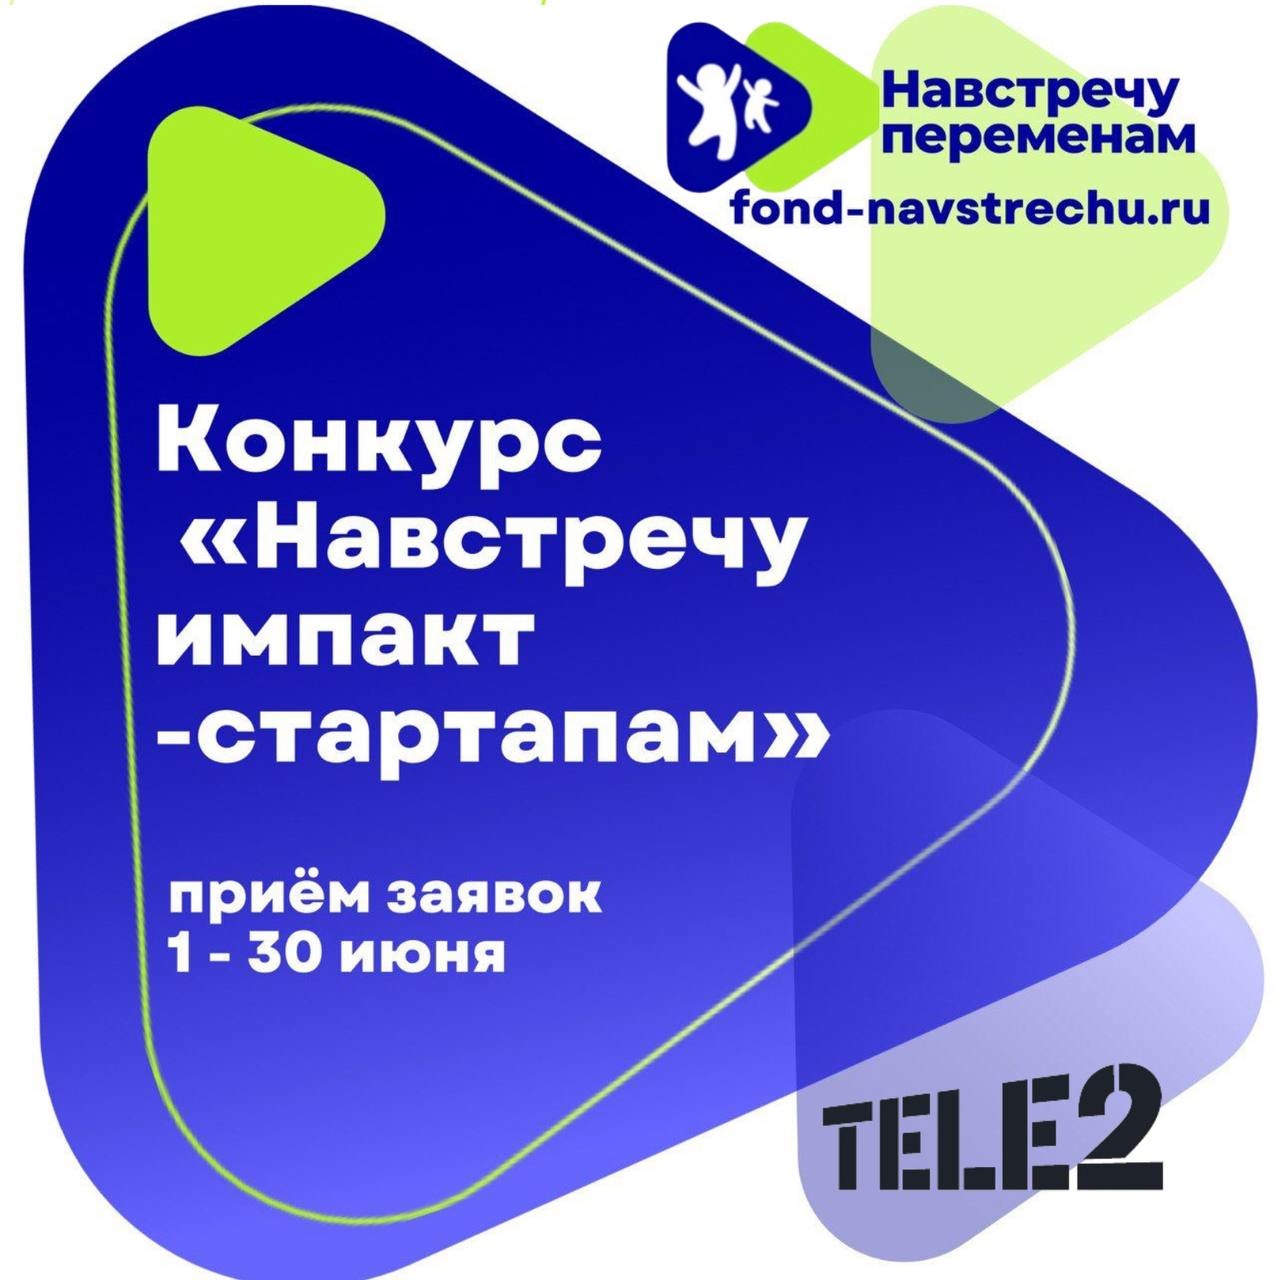 Tele2 выделит гранты на развитие цифровых проектов, которые решают социальные проблемы